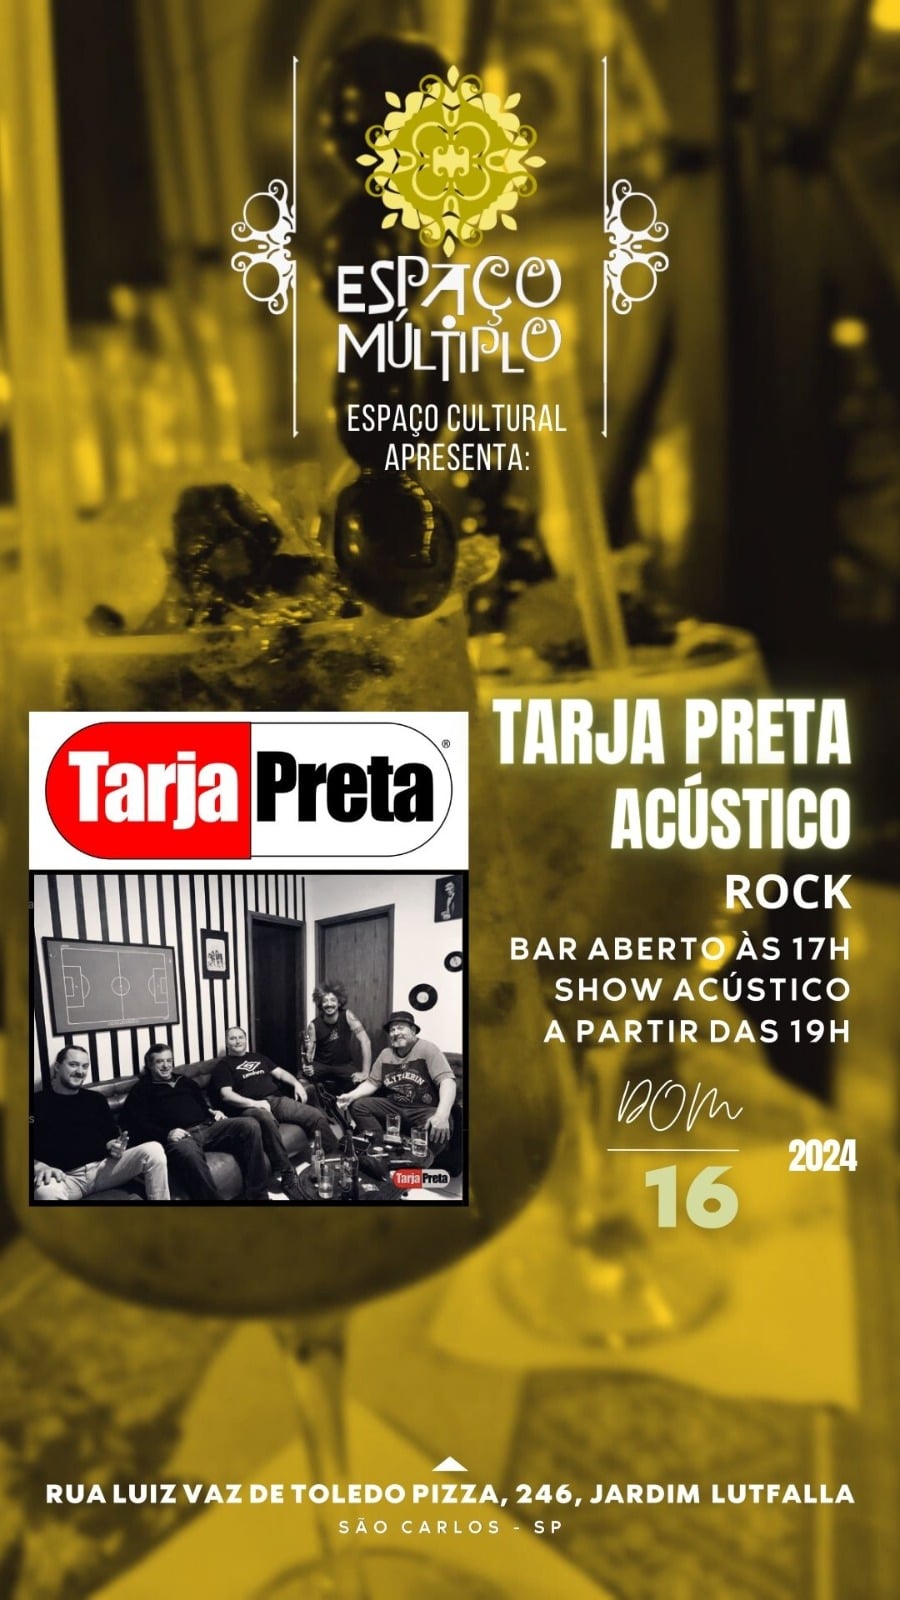 Tarja Preta faz show acústico no Espaço Múltiplo neste domingo